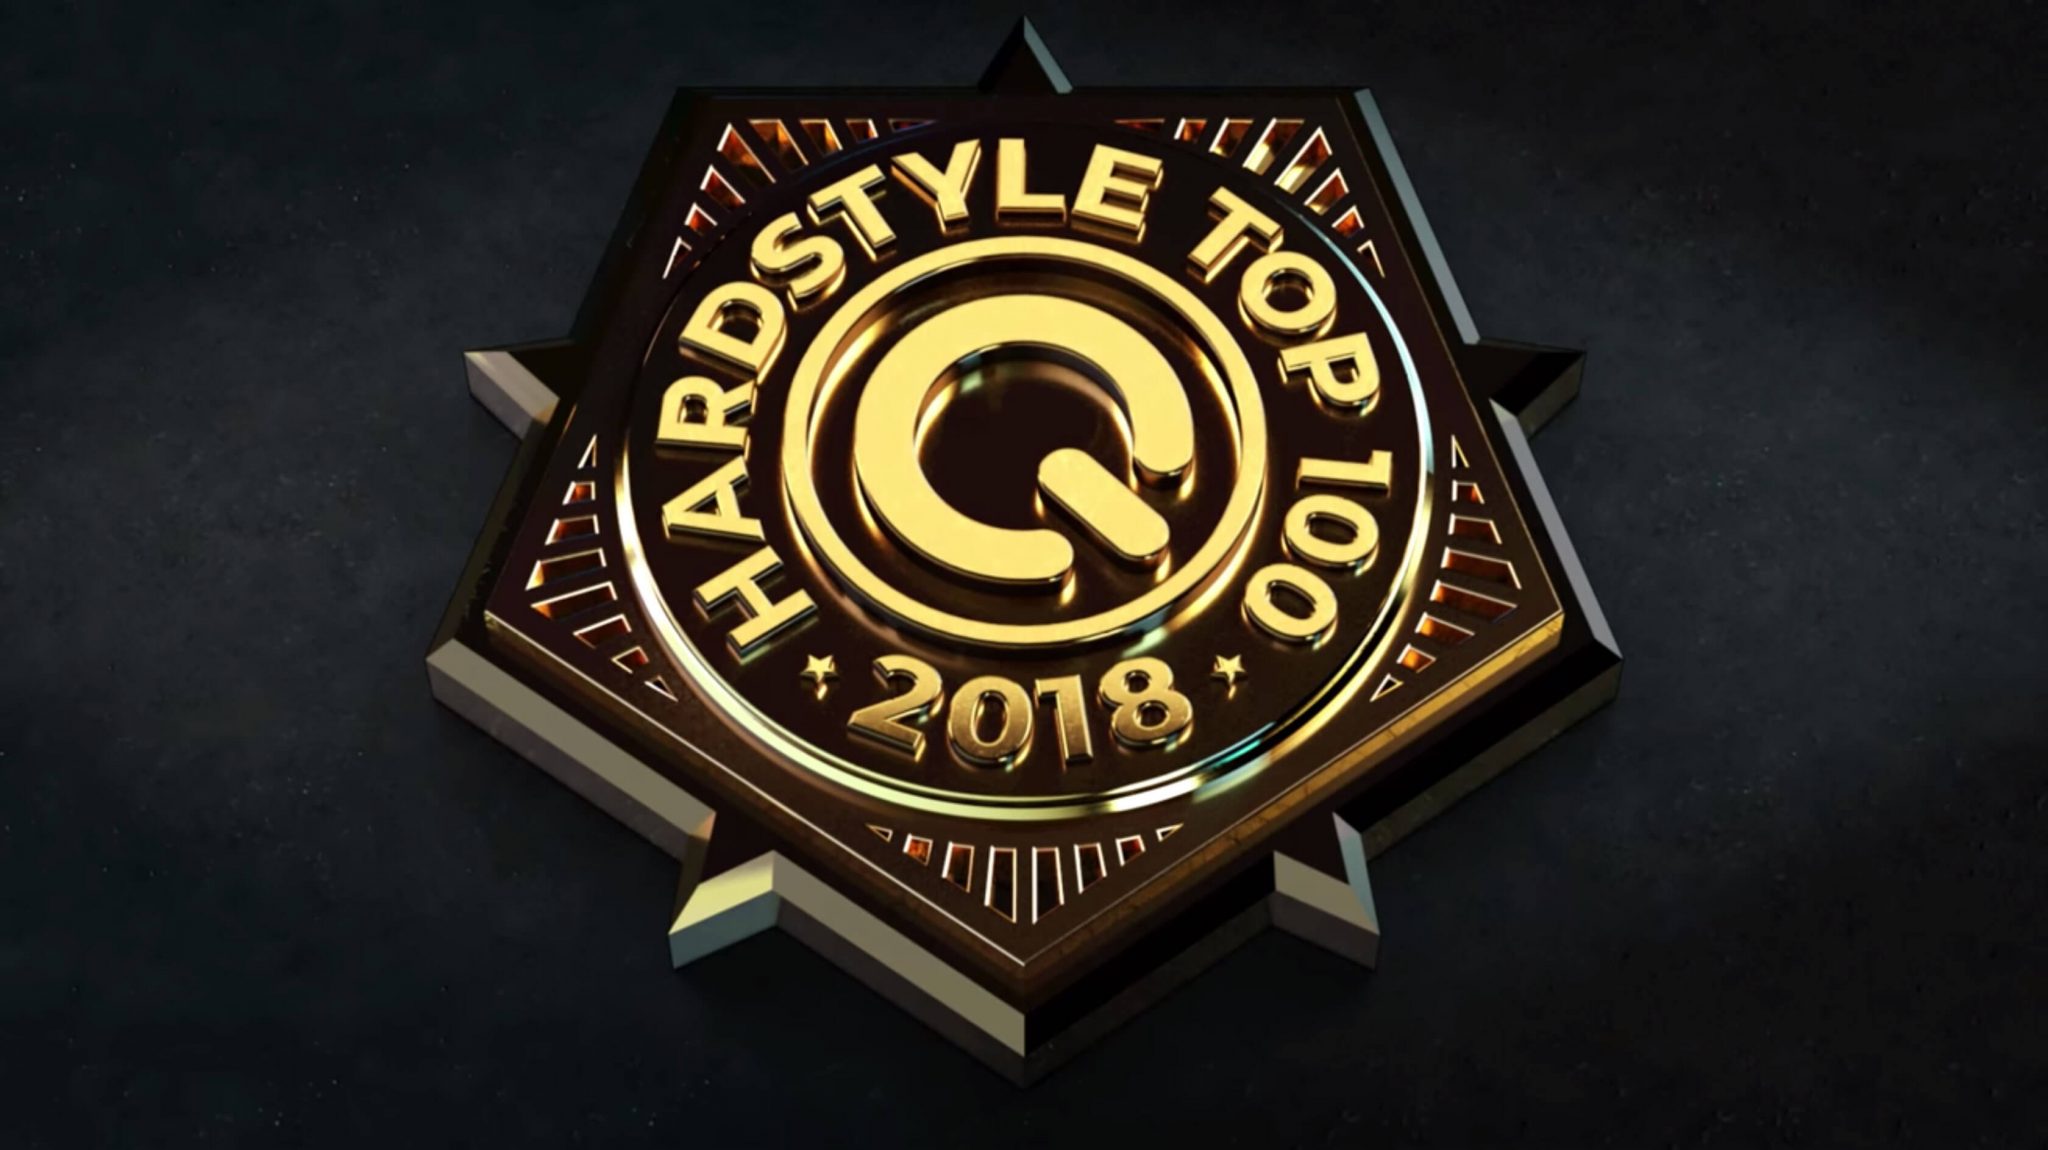 Cổng Bình Chọn Q-Dance Hardstyle Top 100 2018 Chính Thức Mở Cửa!